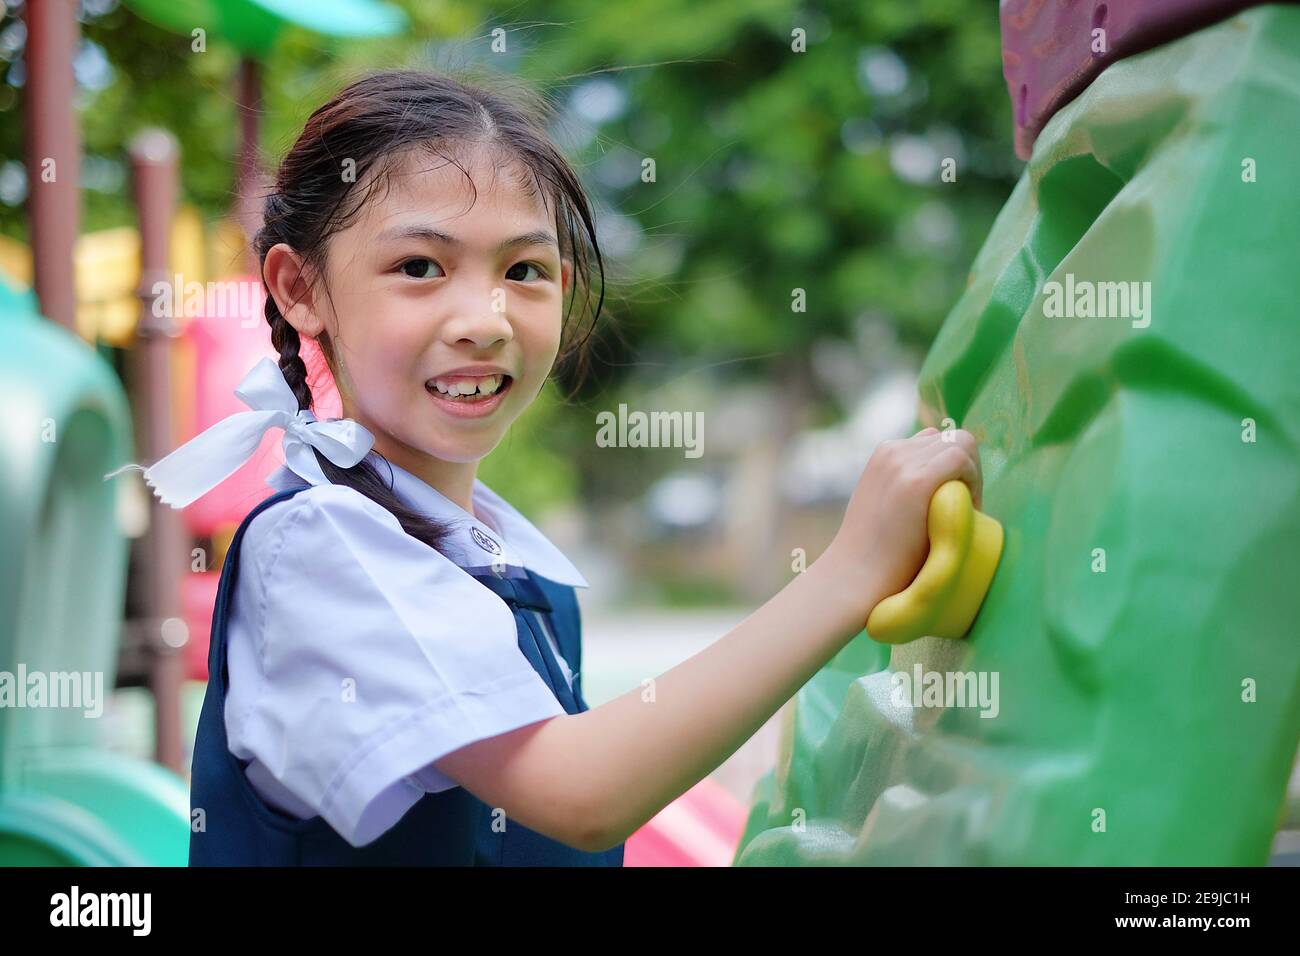 Una giovane ragazza asiatica carina in uniforme bianca e blu scuola sta giocando arrampicata su roccia in un parco giochi, allenandosi e divertendosi. Foto Stock